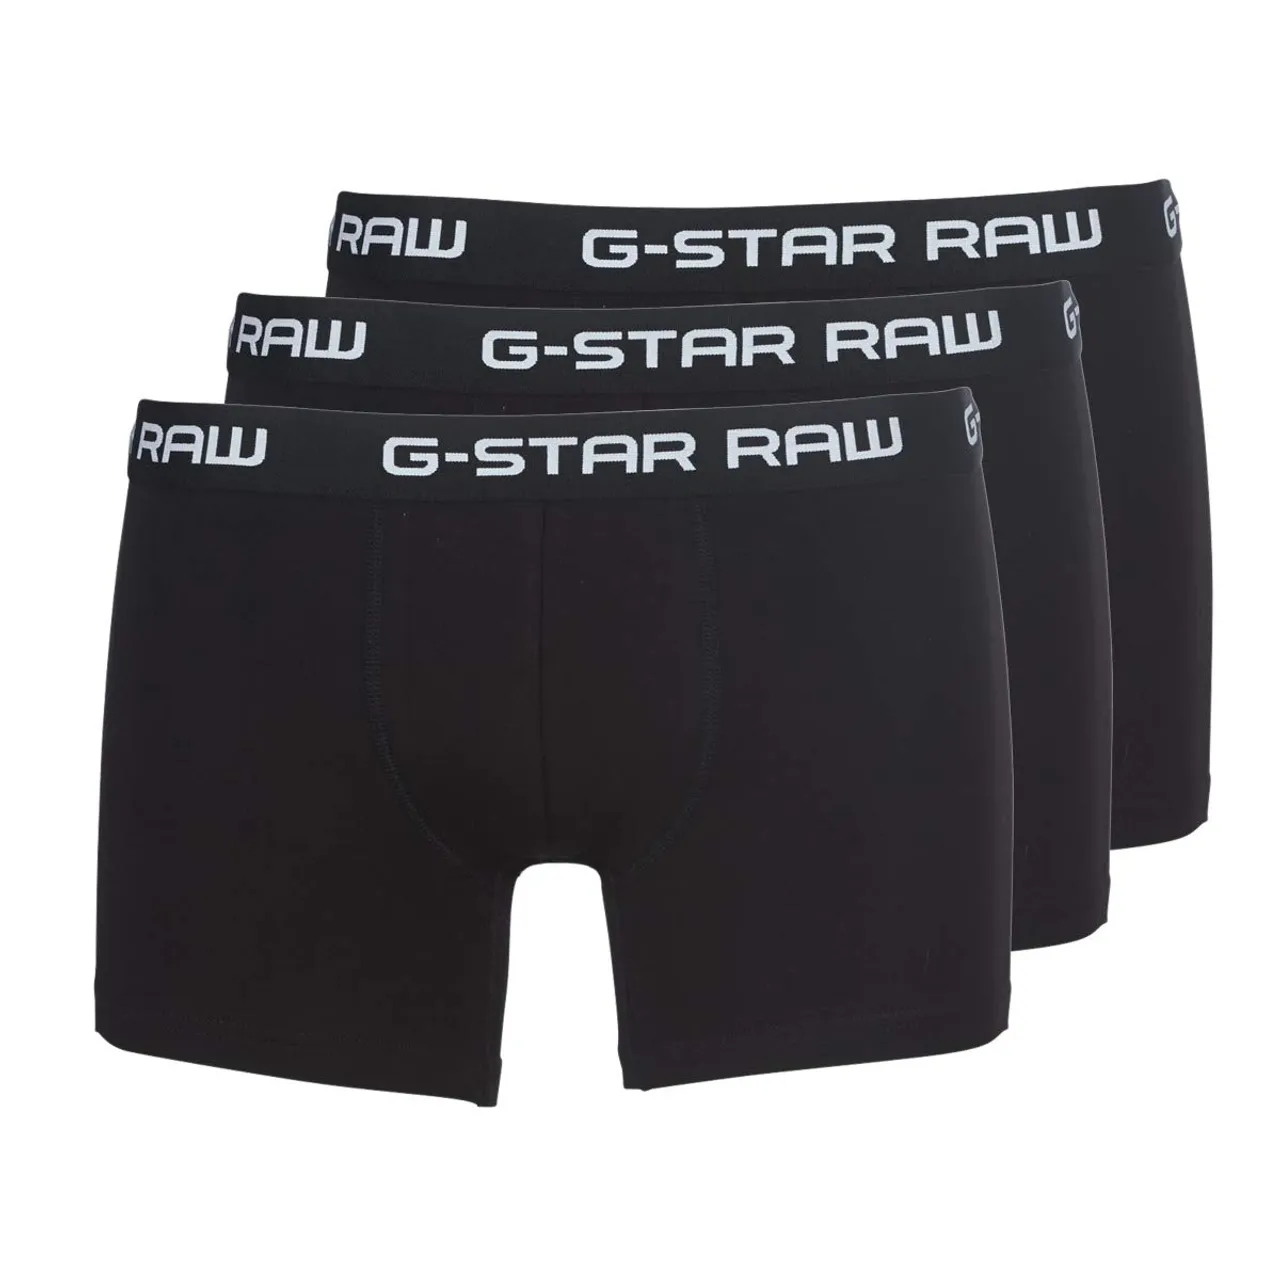 G-STAR RAW Herren Classic Trunks 3-Pack